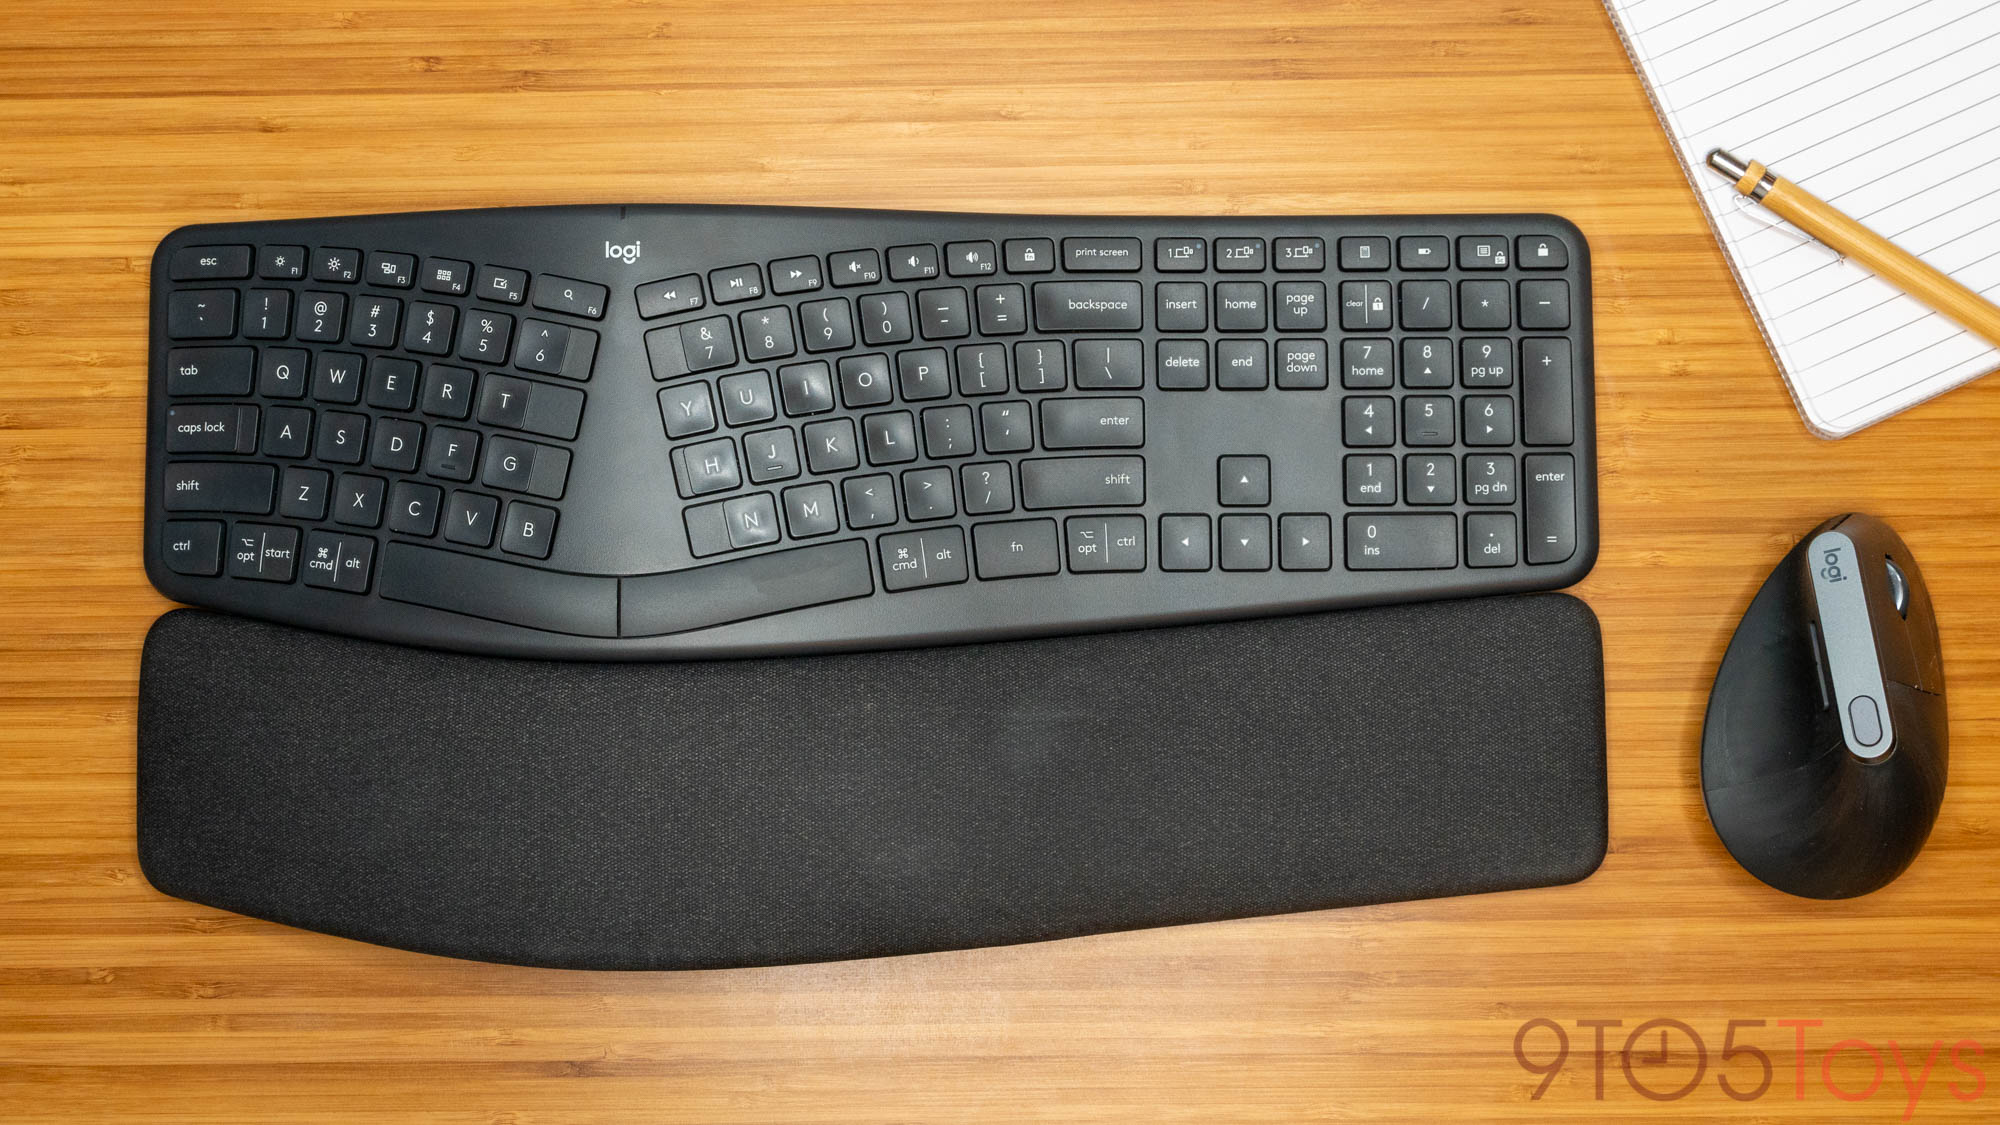 Ergo K860 made like keyboards -